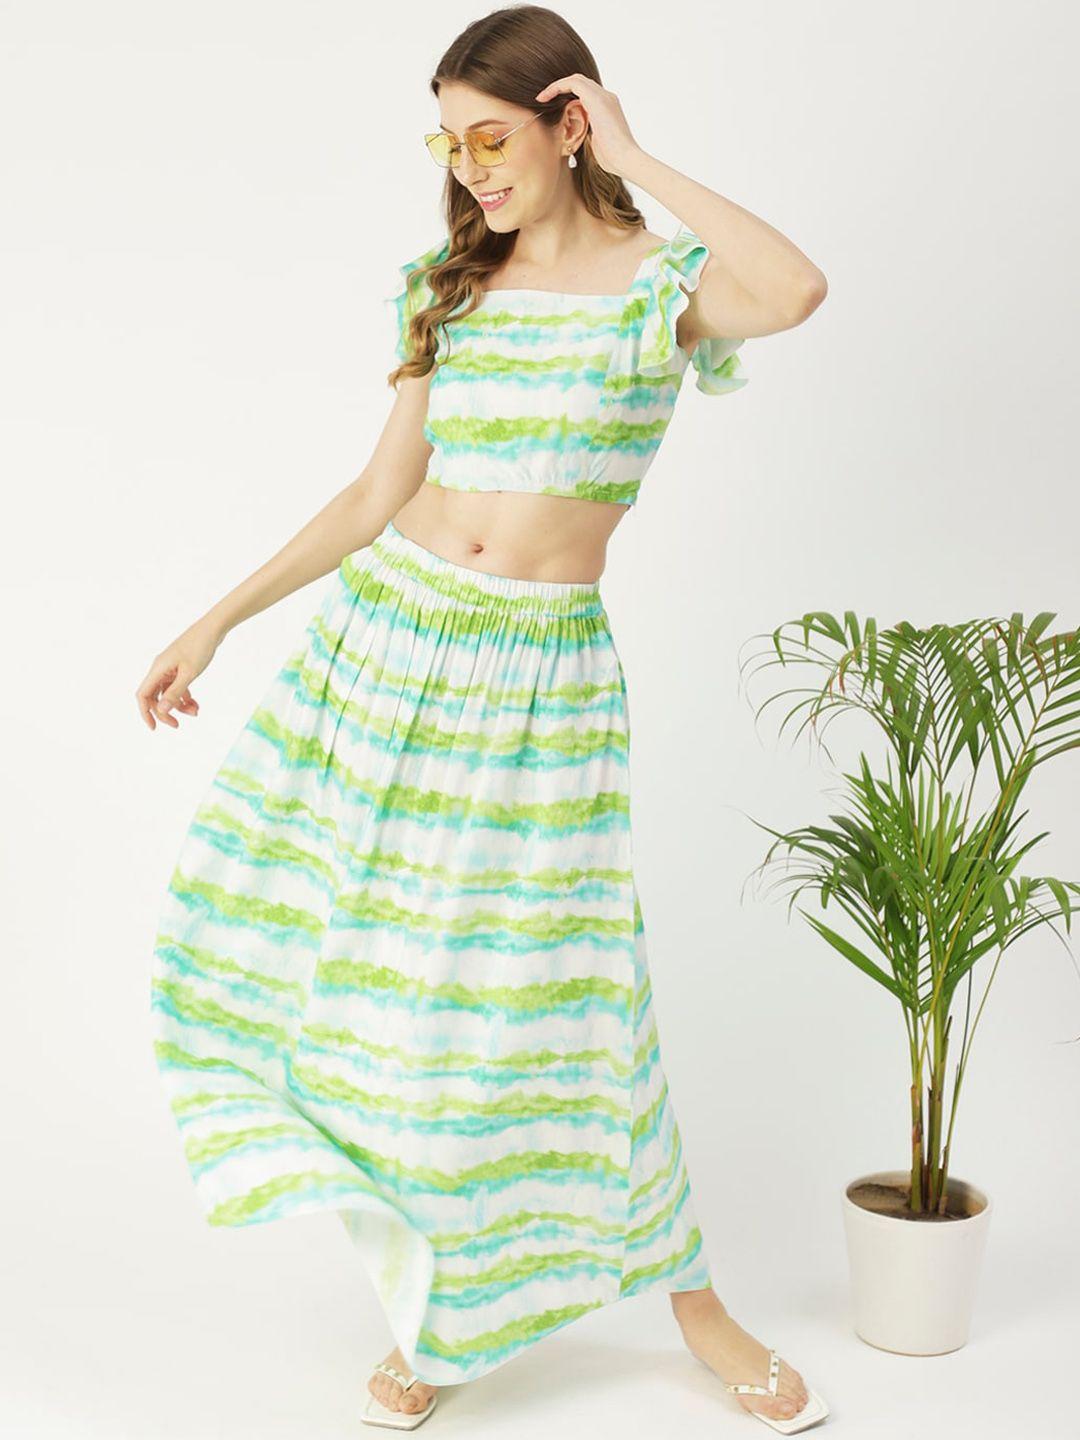 moomaya printed crop top with skirt co-ords